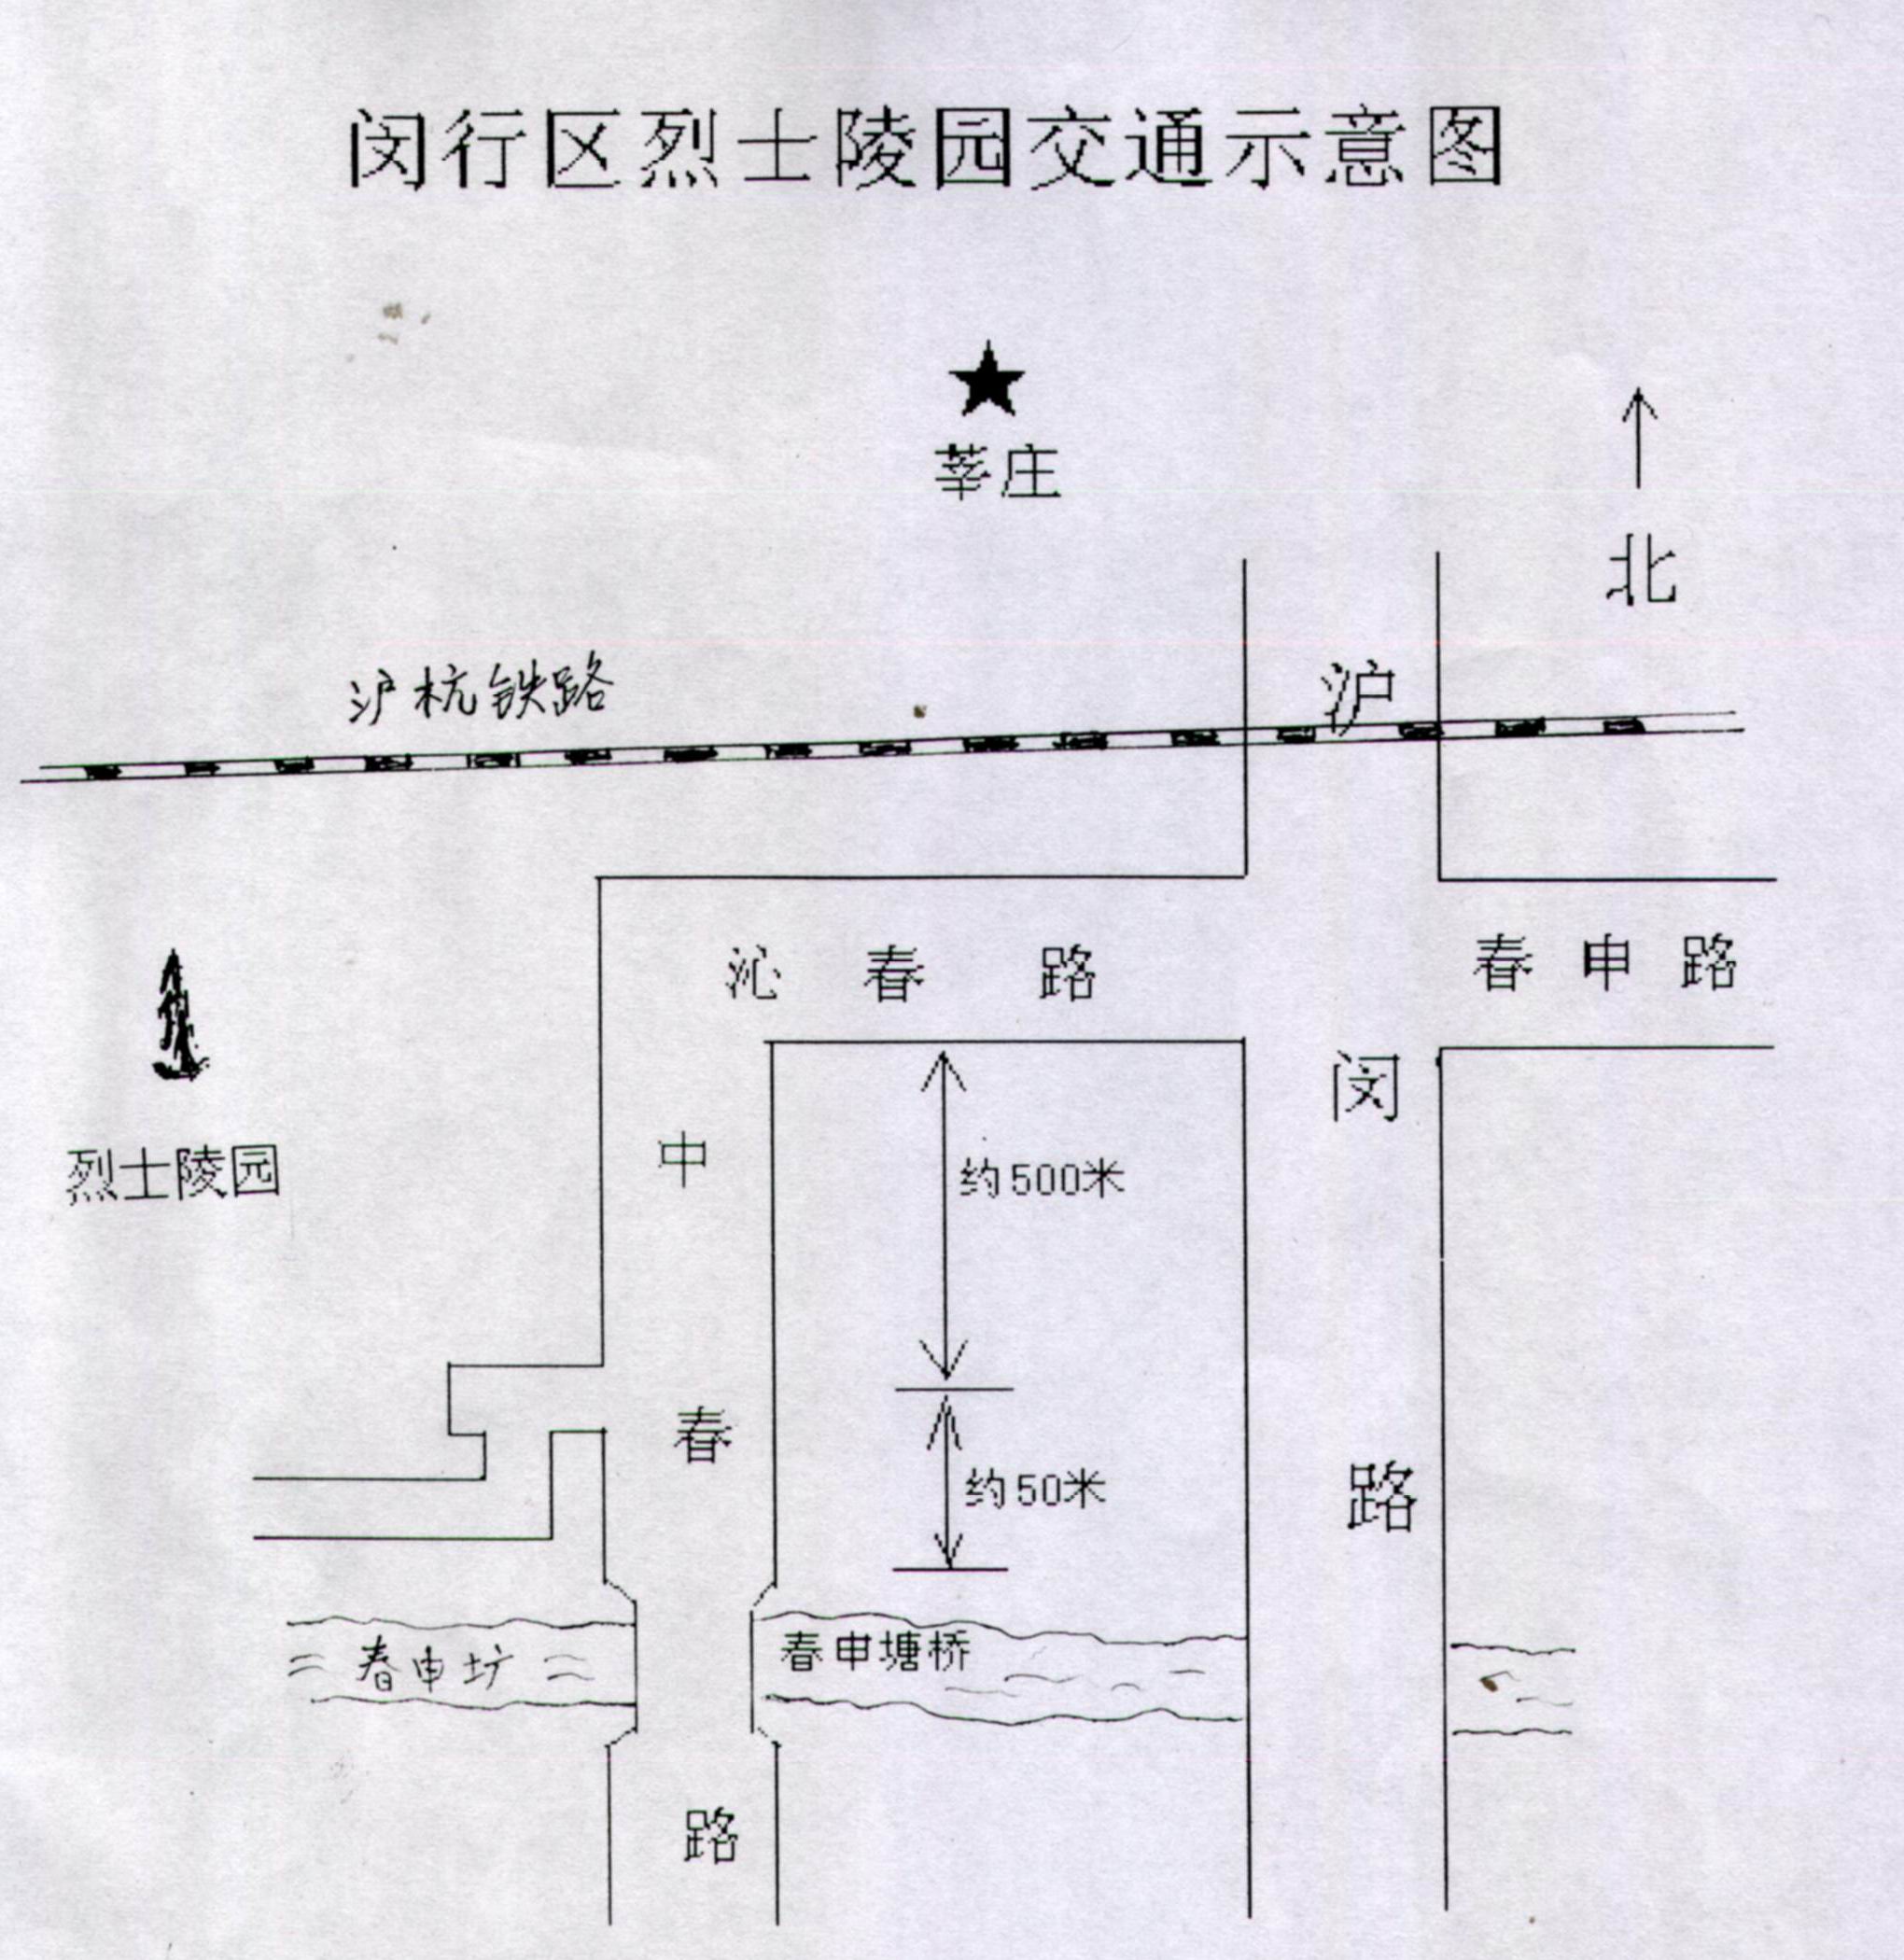 閔行區烈士陵園交通路線圖